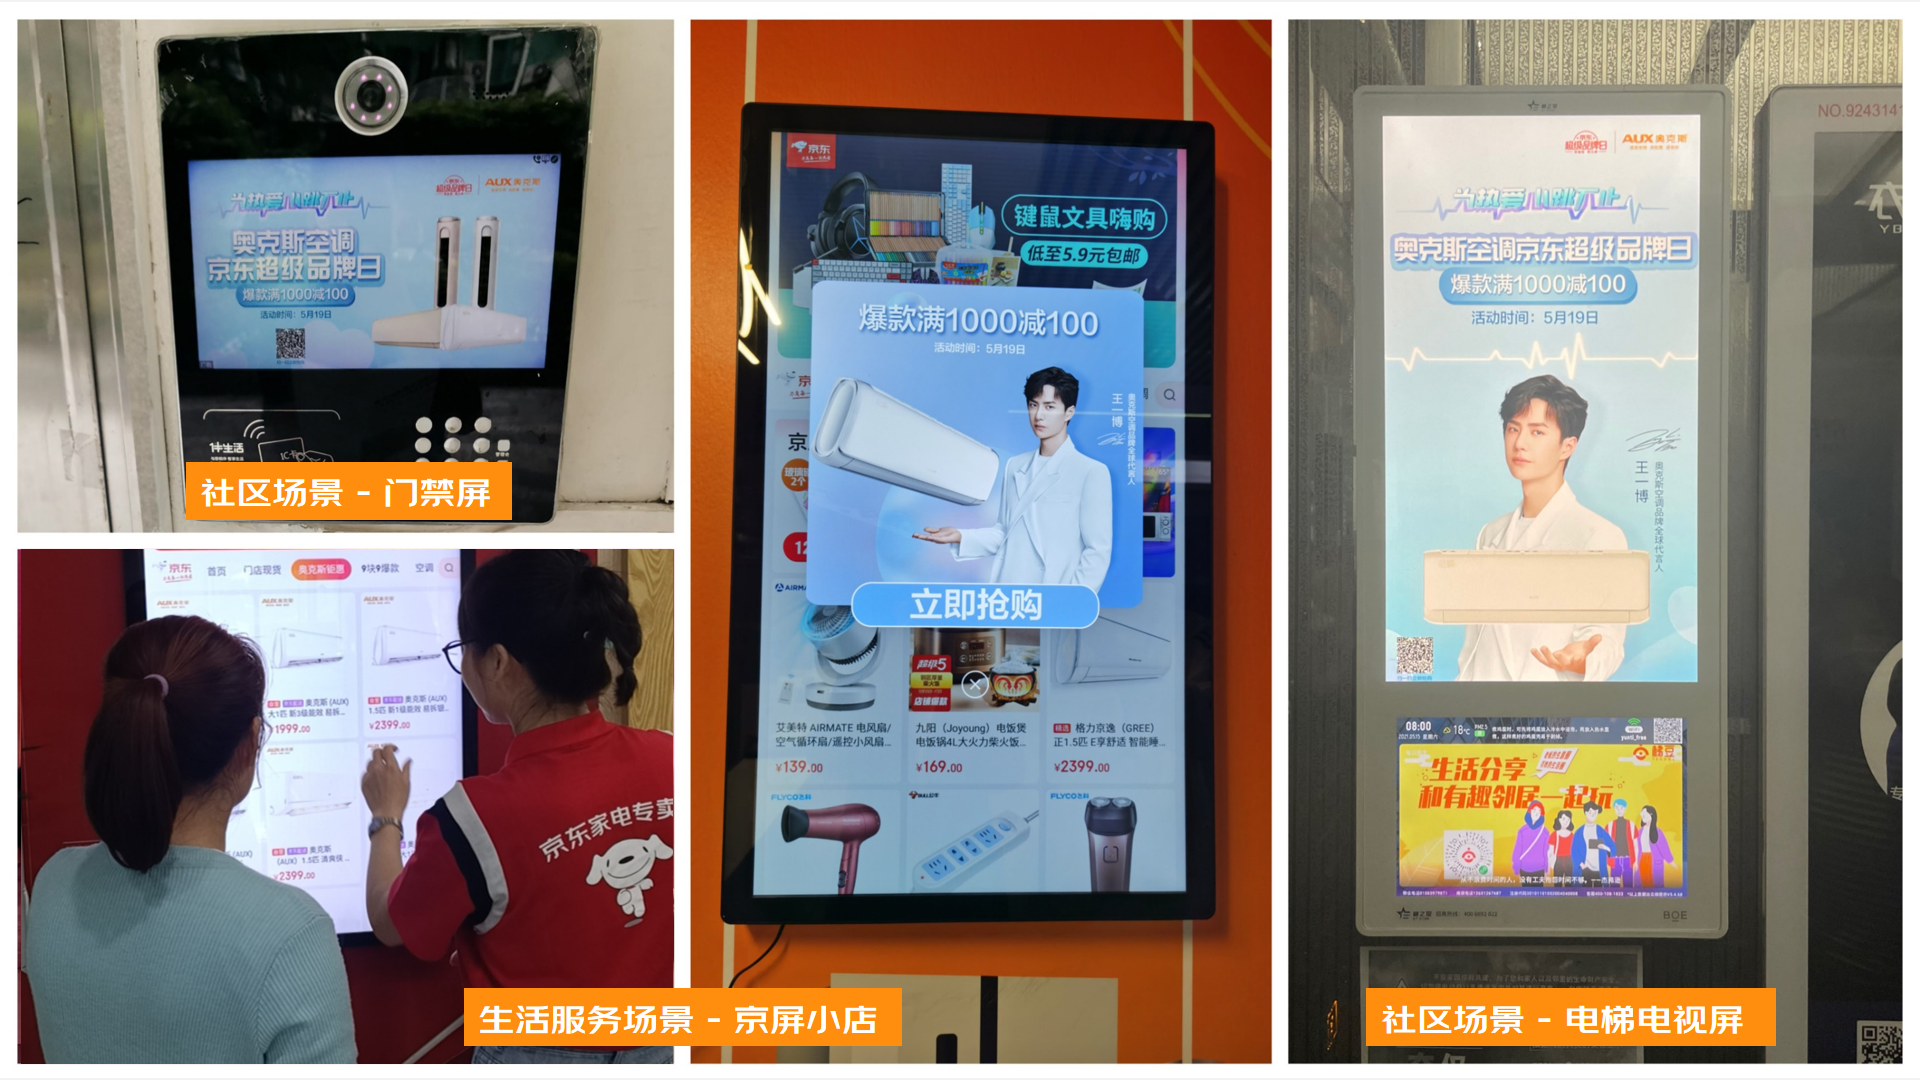 How to do Jingdong 618 subway advertising_Jingdong technology subway advertising_Jingdong New Year Festival subway advertising